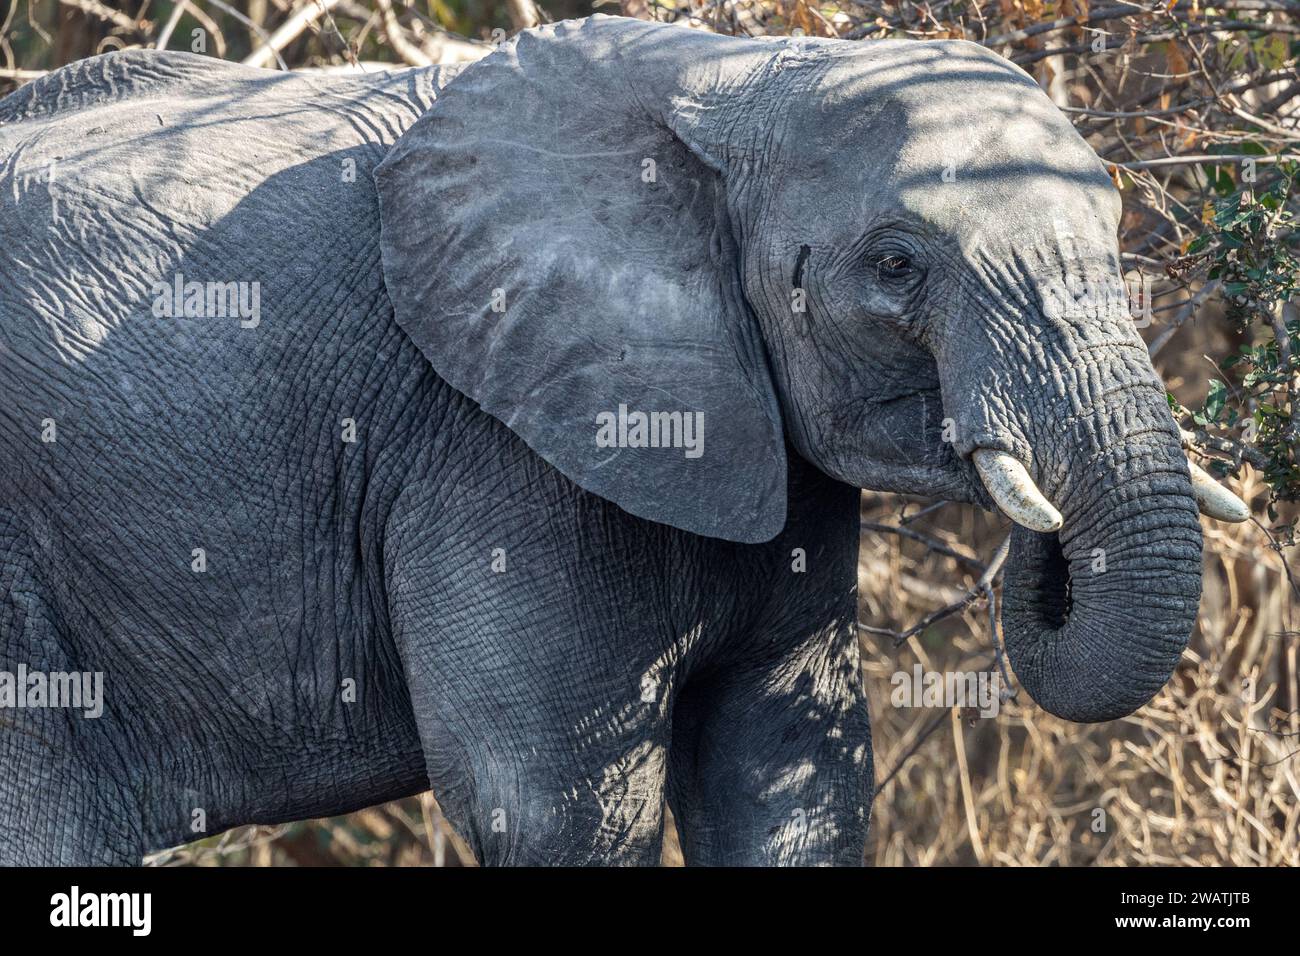 Female, Elephant, eating, mopane woodland, Liwonde National Park, Malawi Stock Photo